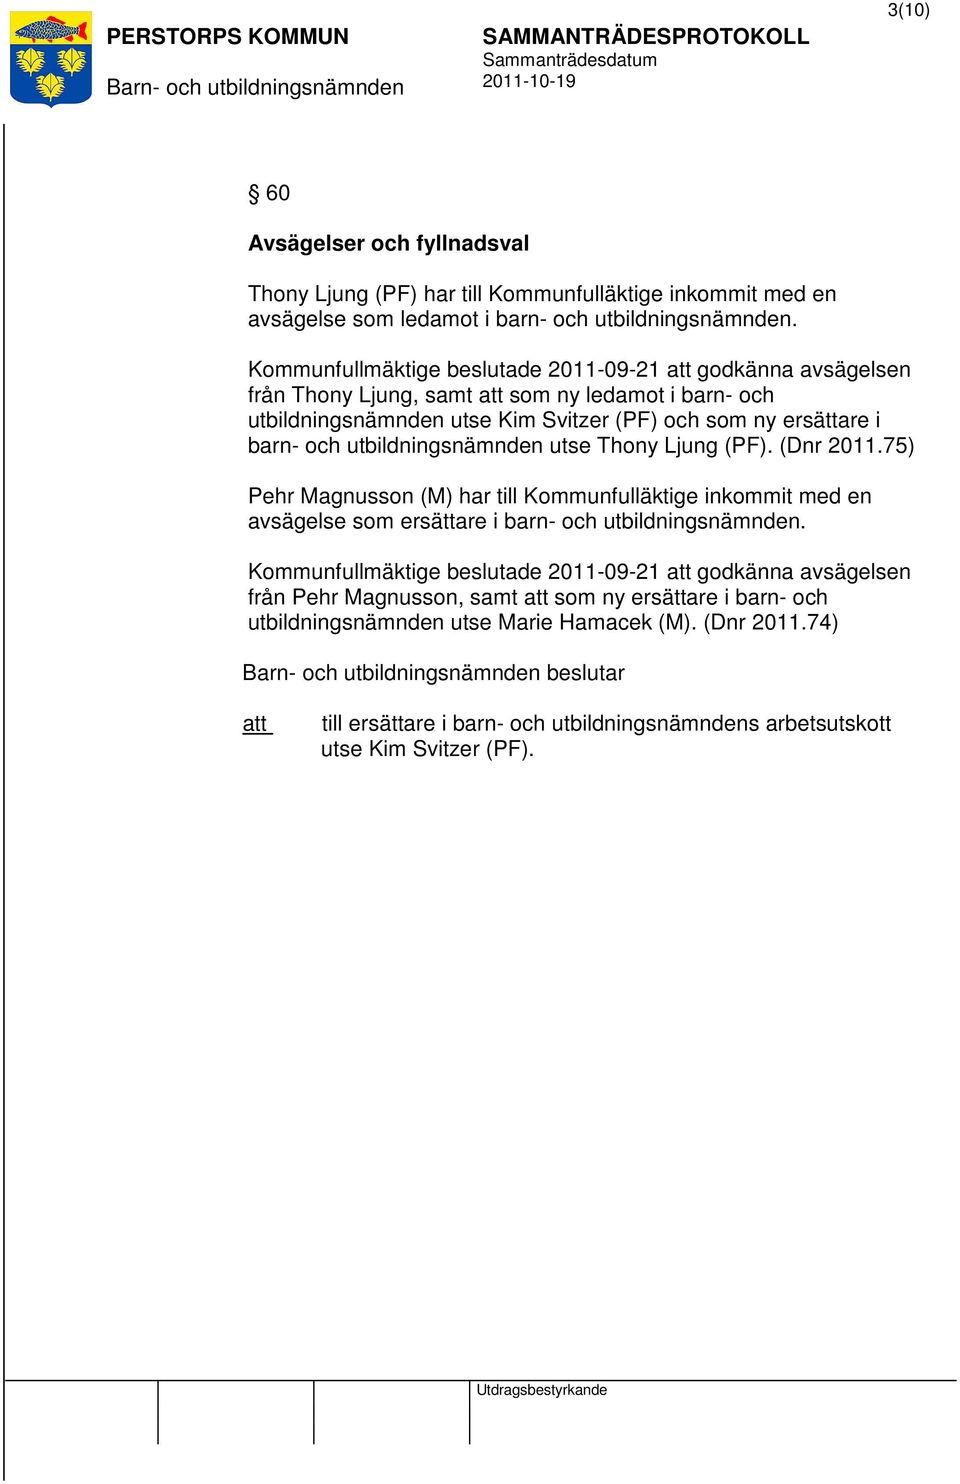 utbildningsnämnden utse Thony Ljung (PF). (Dnr 2011.75) Pehr Magnusson (M) har till Kommunfulläktige inkommit med en avsägelse som ersättare i barn- och utbildningsnämnden.